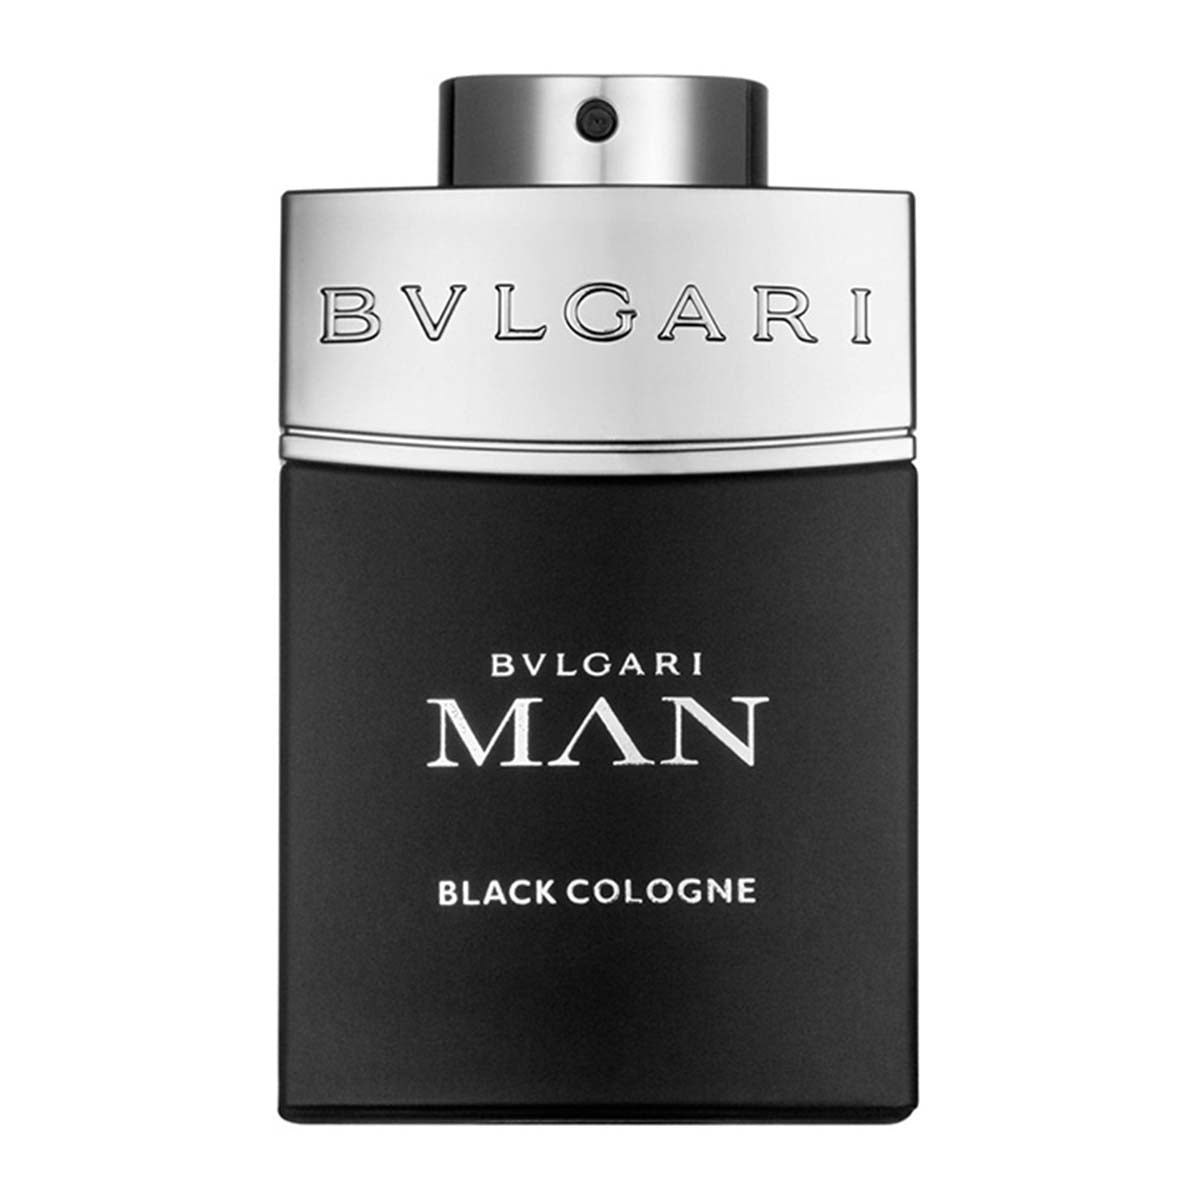 Bvlgari Man Black Cologne Edt For Men 100 ml-Perfume - Allurebeautypk